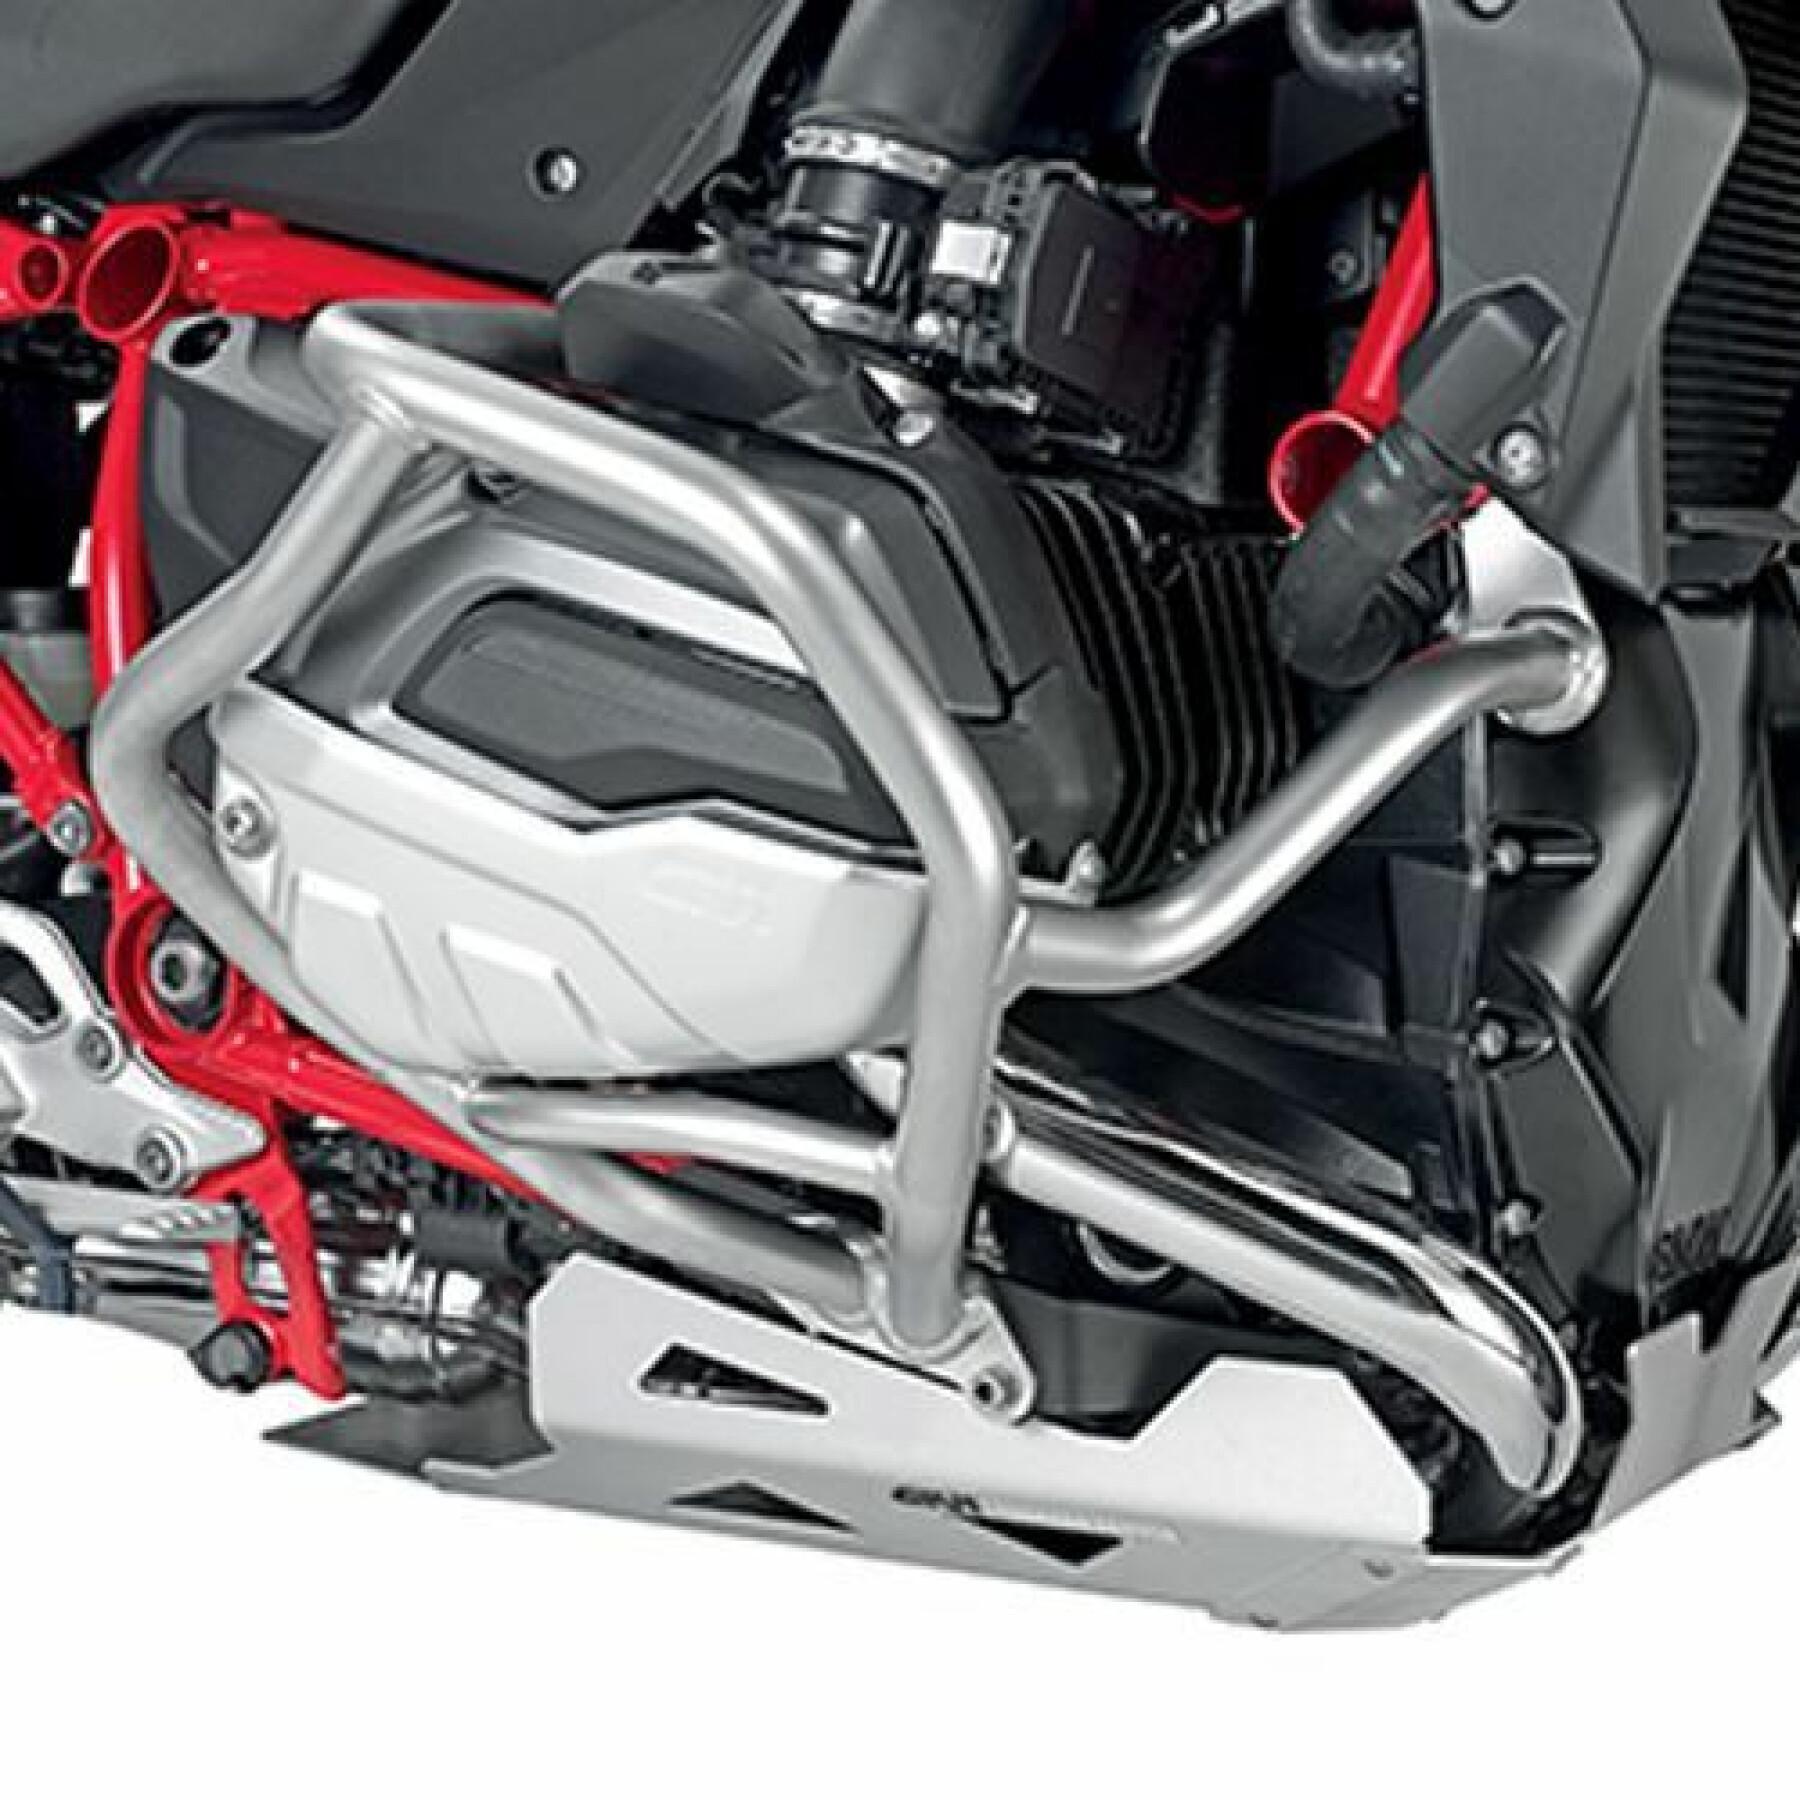 Kit fixation Givi Honda CB500X RM02